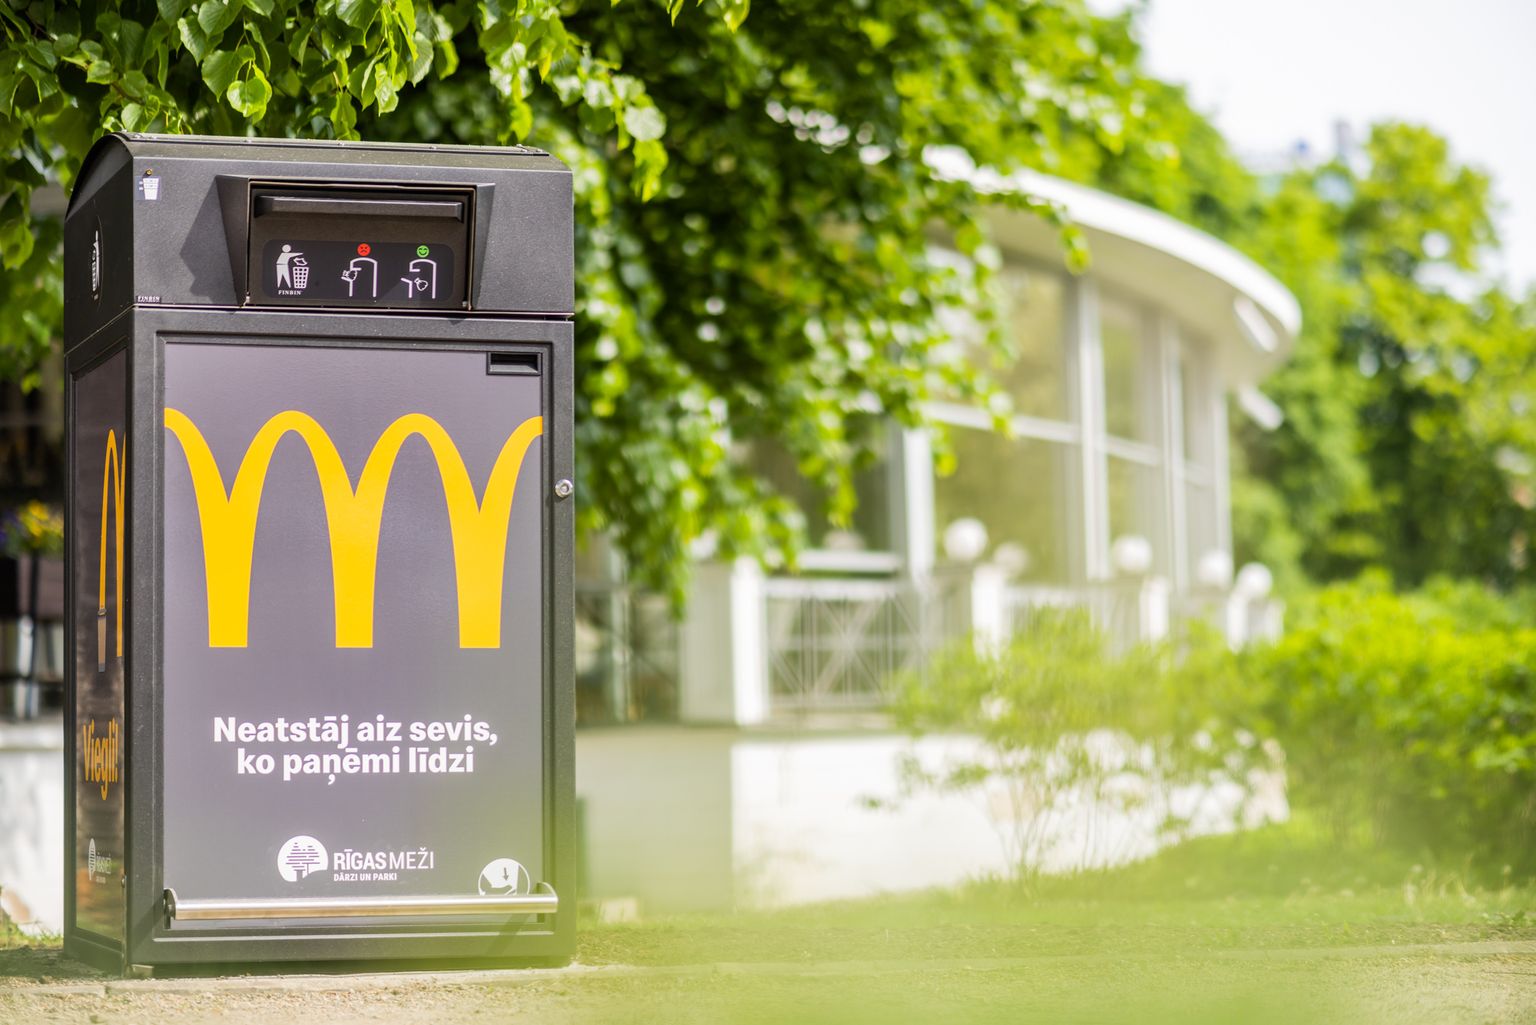 McDonald's в сотрудничестве с Rīgas meži установил первые "умные" мусорные контейнеры